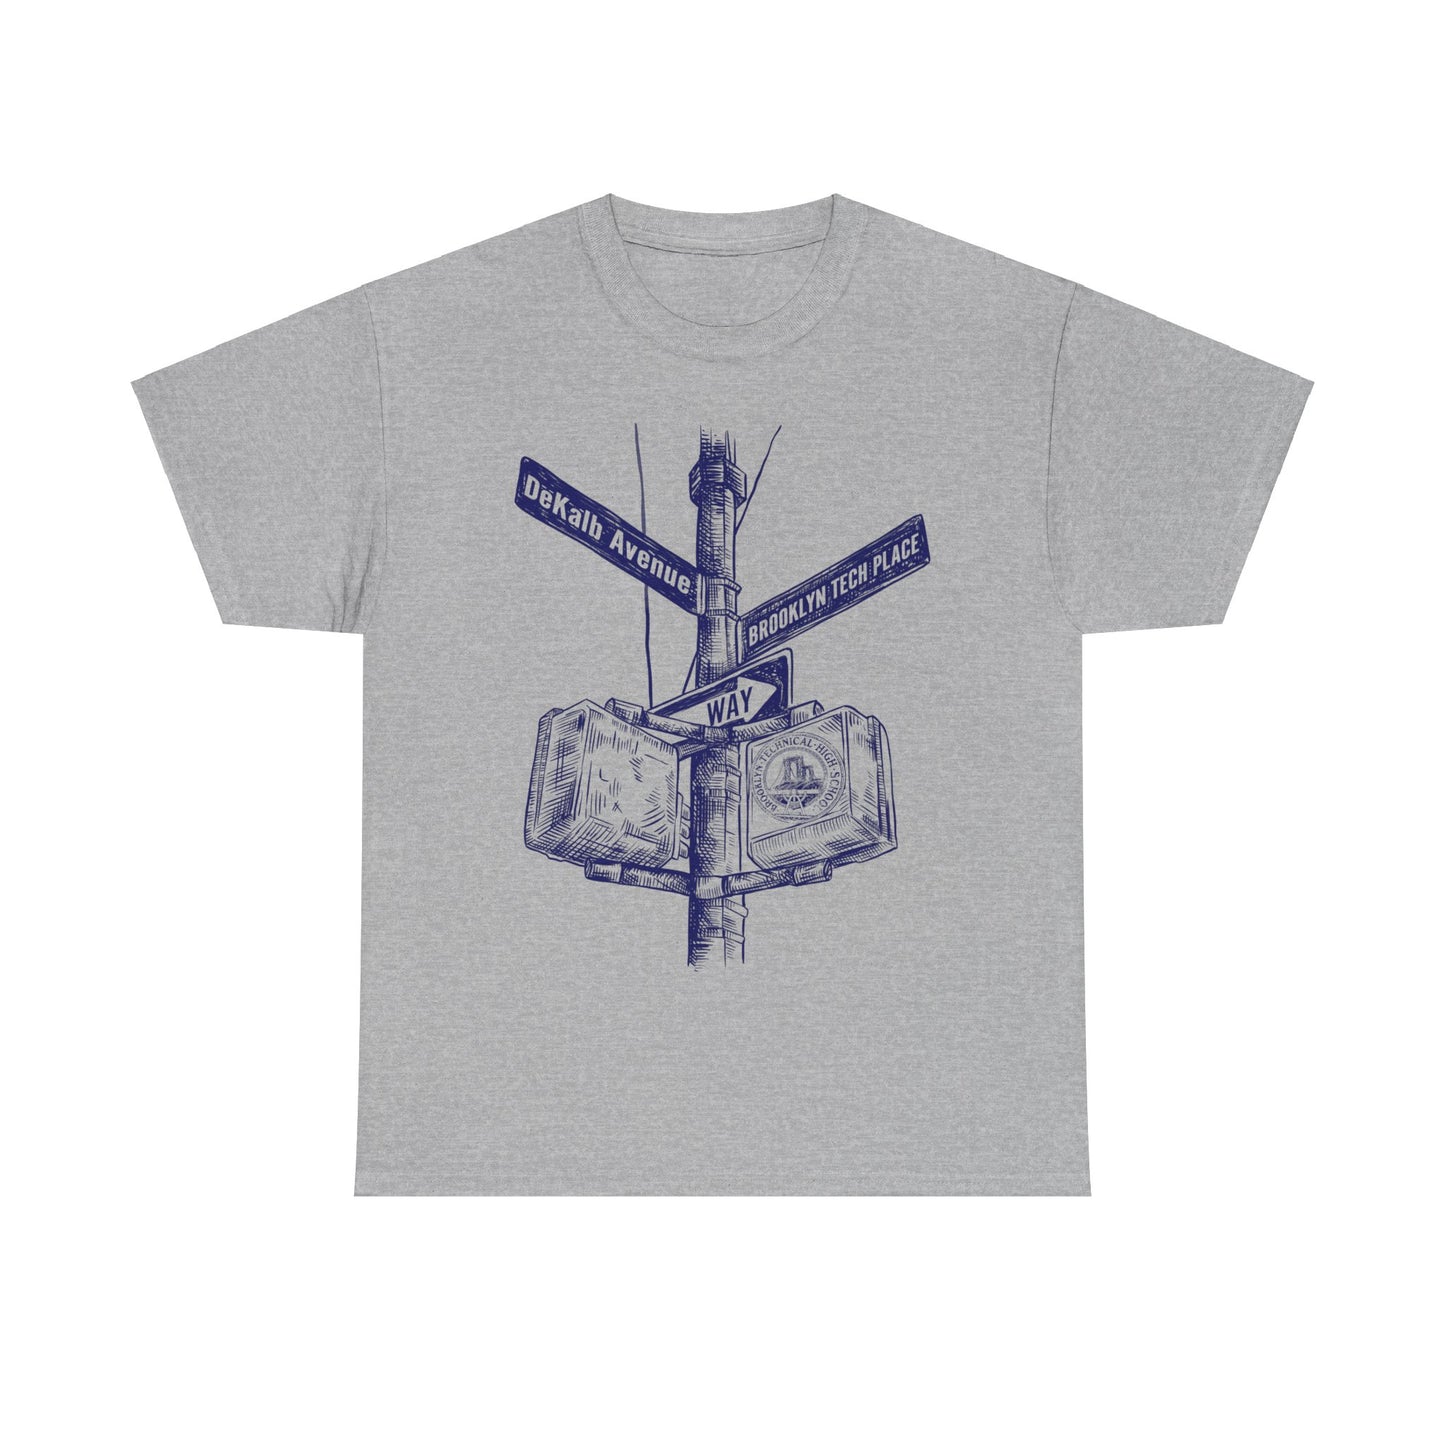 Boutique - Dekalb Ave & Brooklyn Tech Pl - Men's Heavy Cotton T-Shirt - (blue Graphic)